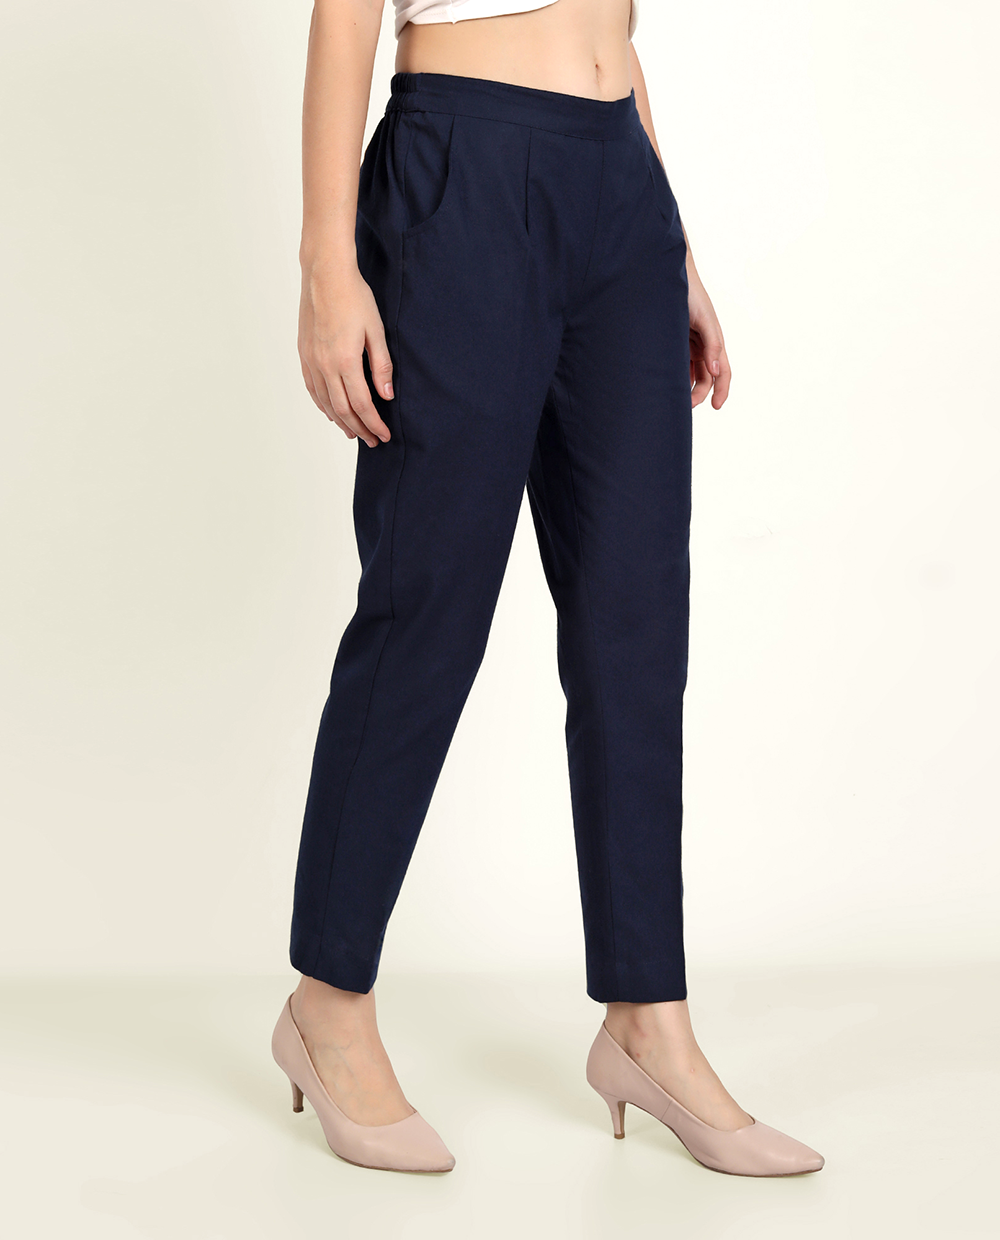 Buy cigarette pantswomen trousers pantsNavy Blue color pants ladies  trouserpants Online  699 from ShopClues